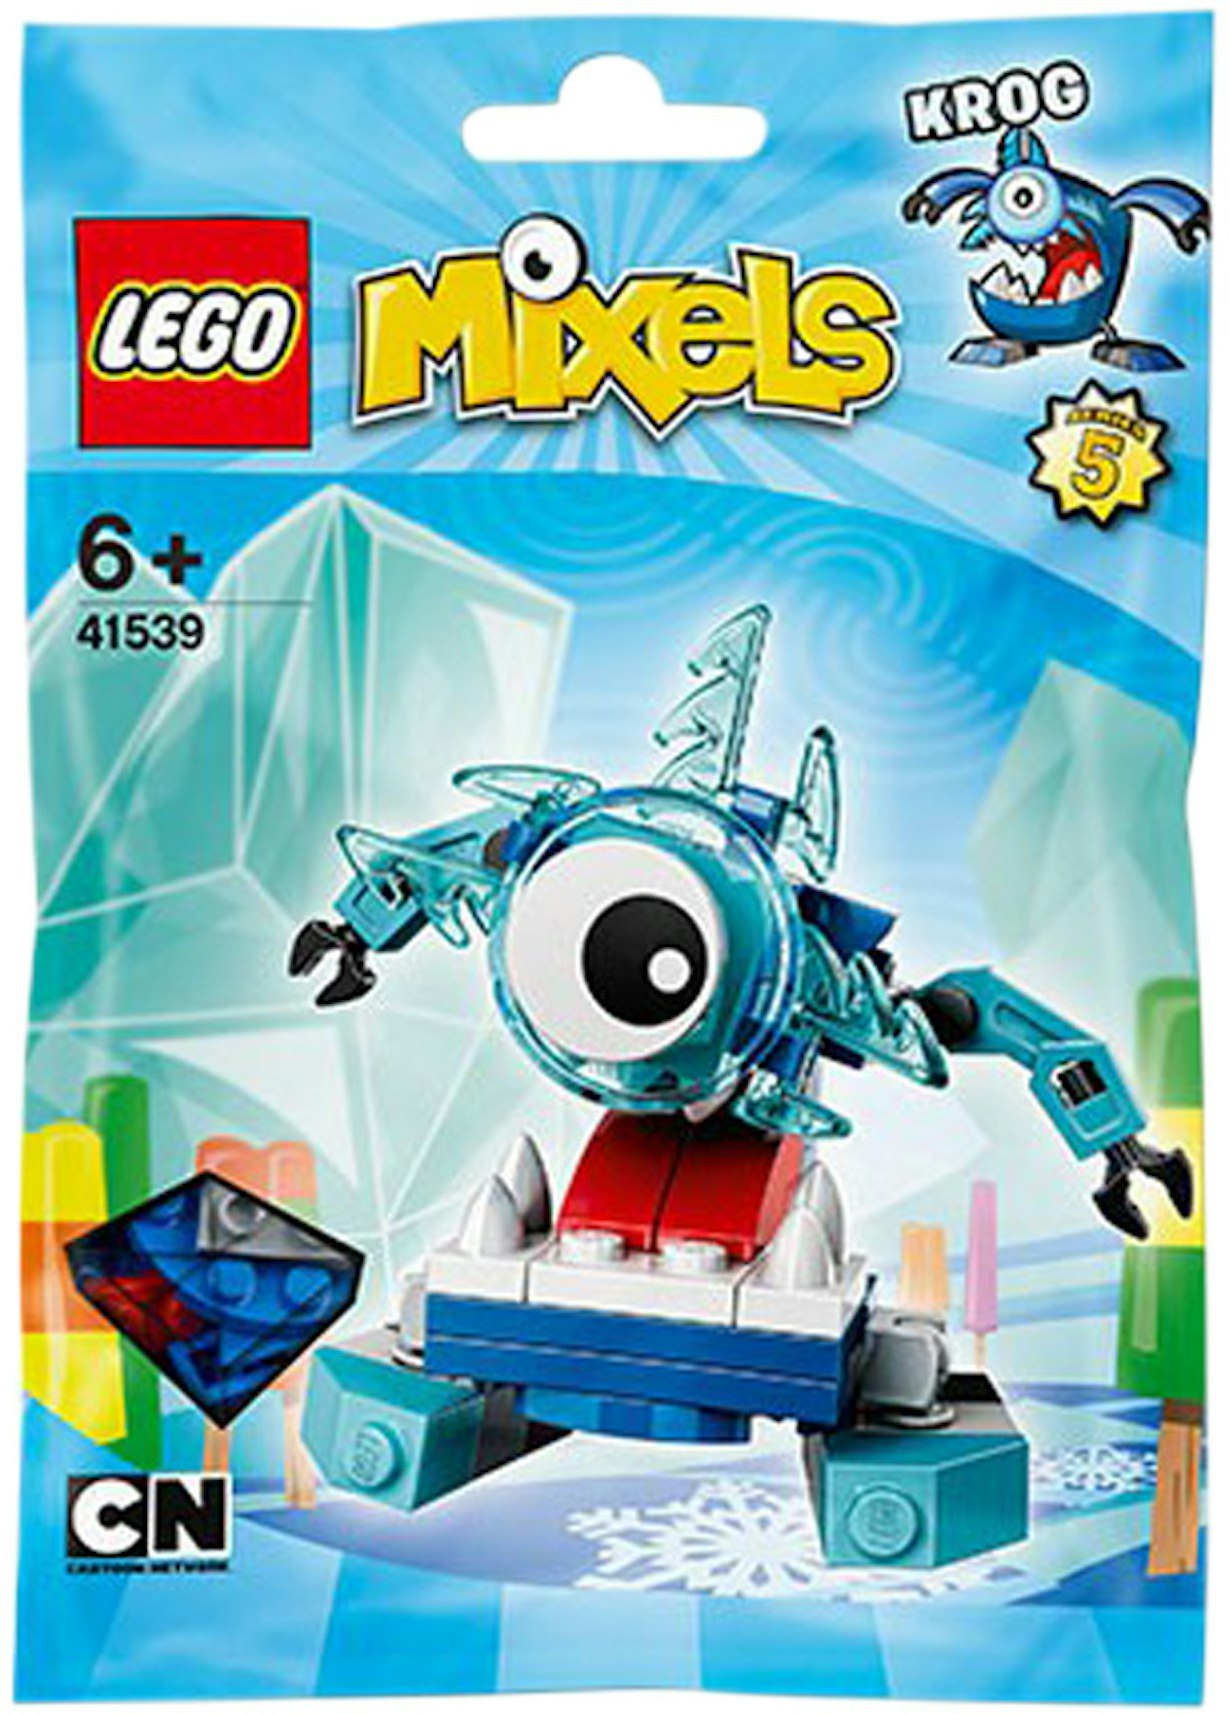 LEGO Mixels Krog Set 41539 -